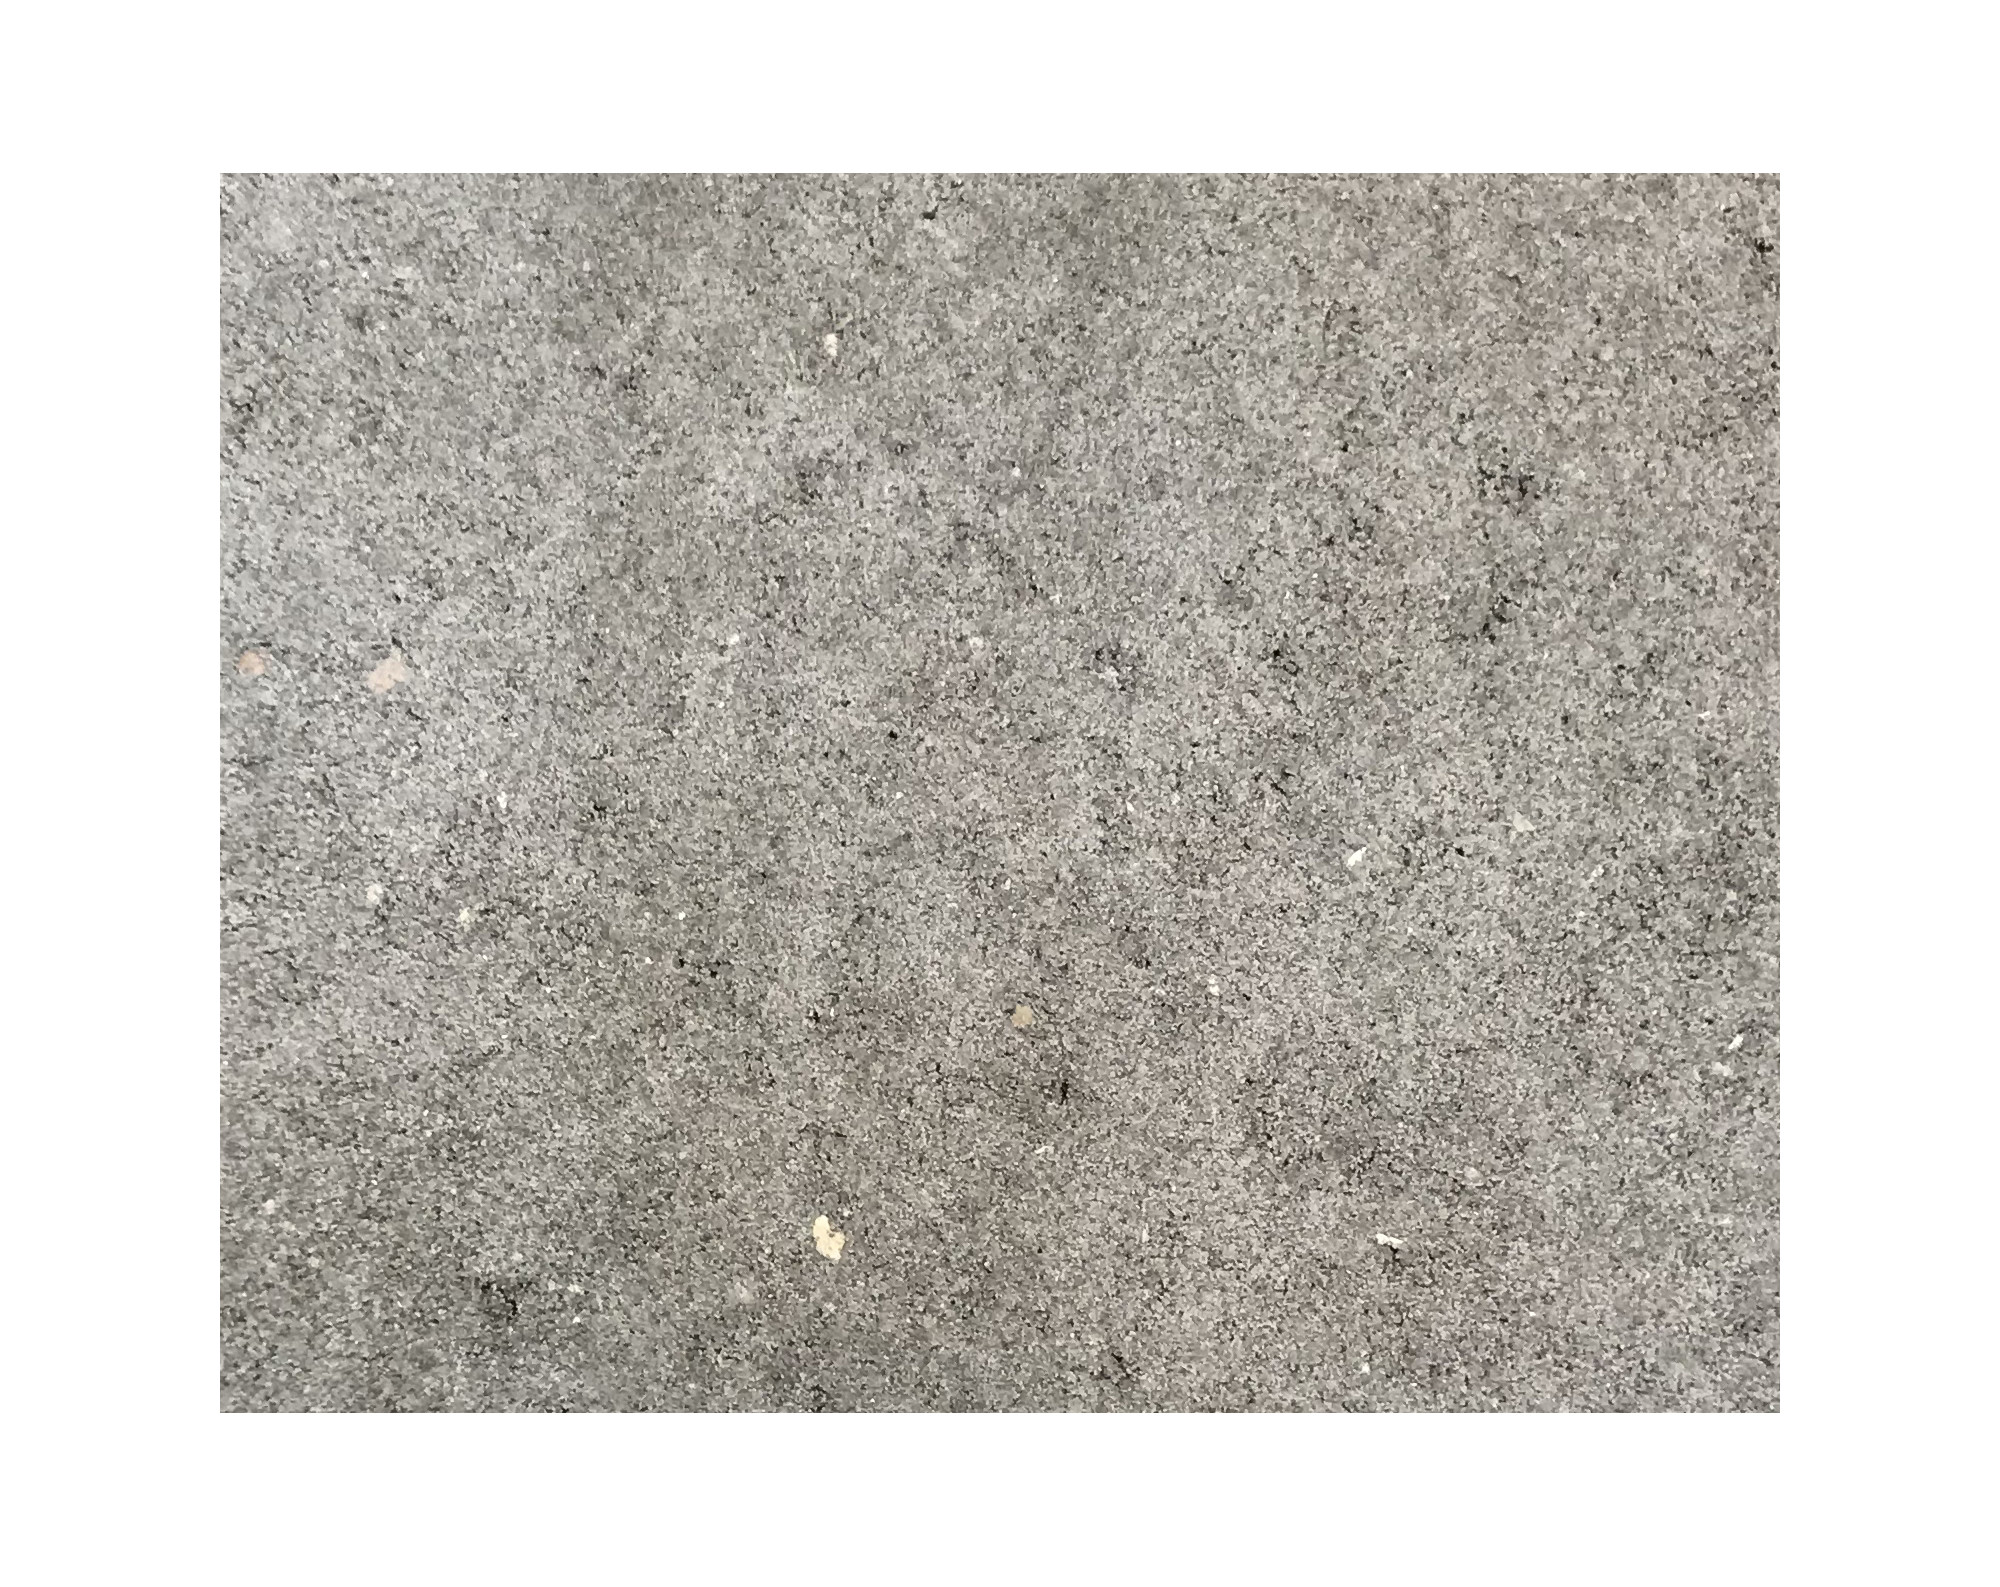 Harmo roc athenset, rustica-serie, ovaal d: 4,20mx8,20m, grijs, beton